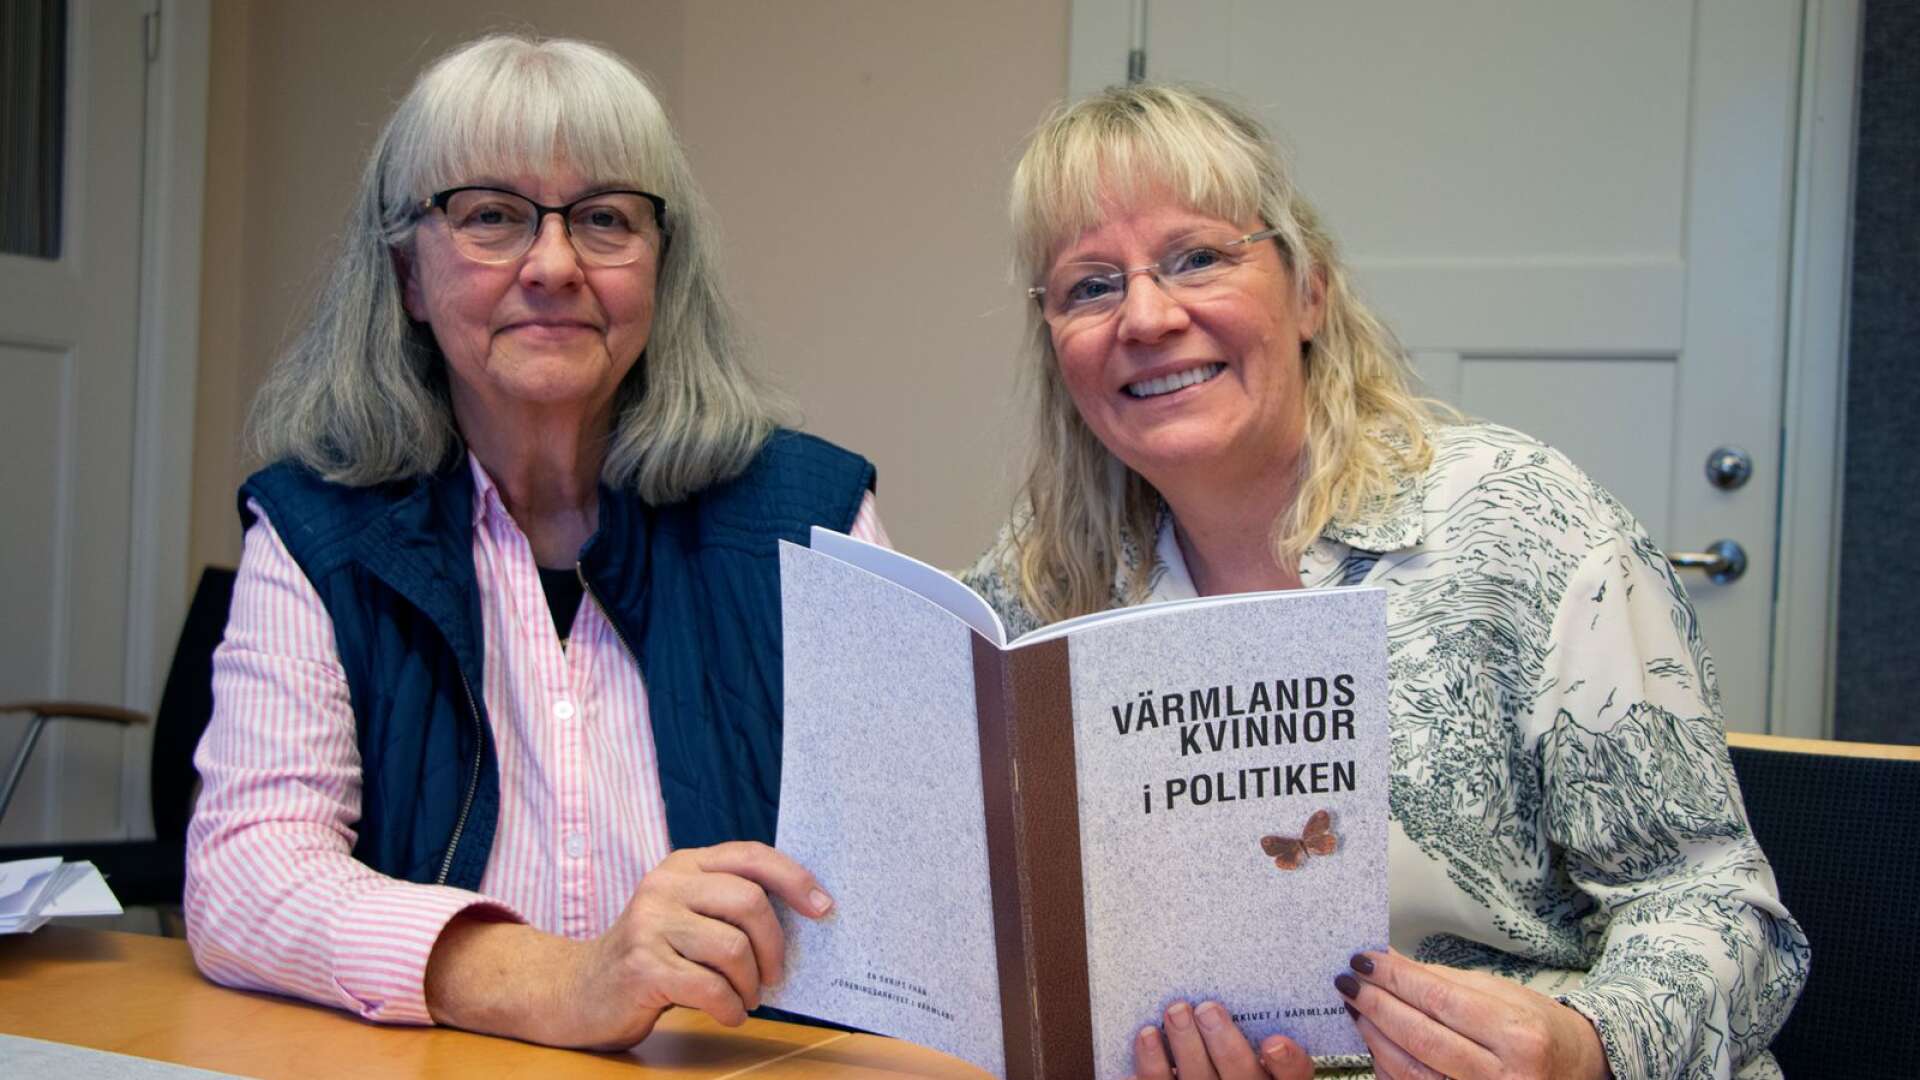 Berith Sande och Anna-Karin Worland lyfter fram värmländska kvinnor som varit verksamma i politiken på olika plan.